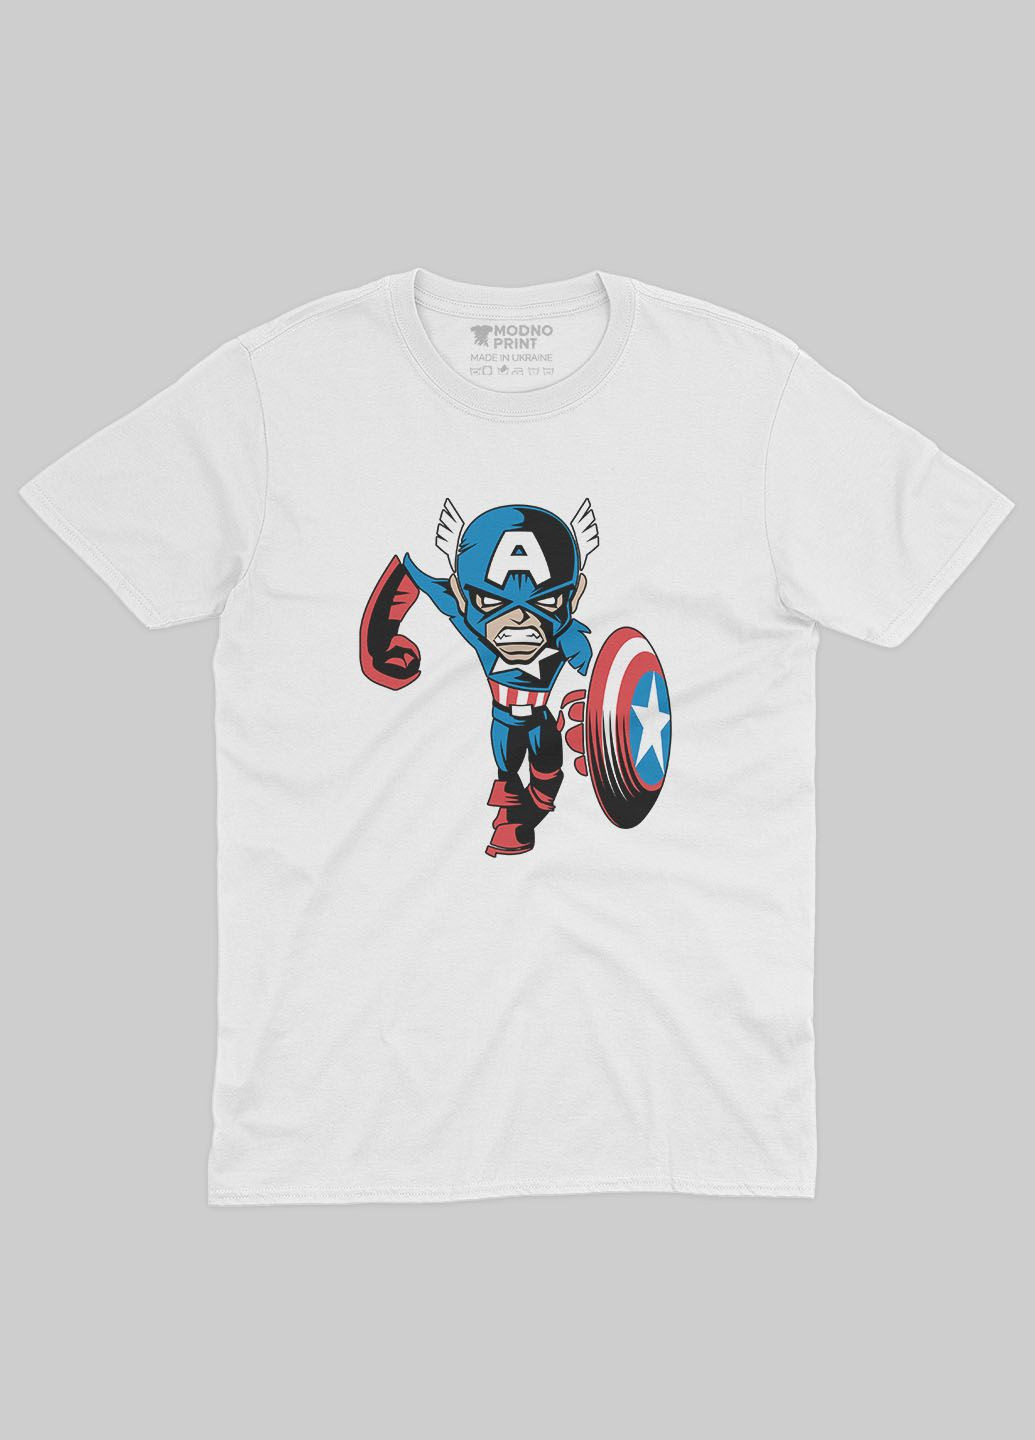 Белая демисезонная футболка для девочки с принтом супергероя - капитан америка (ts001-1-whi-006-022-014-g) Modno